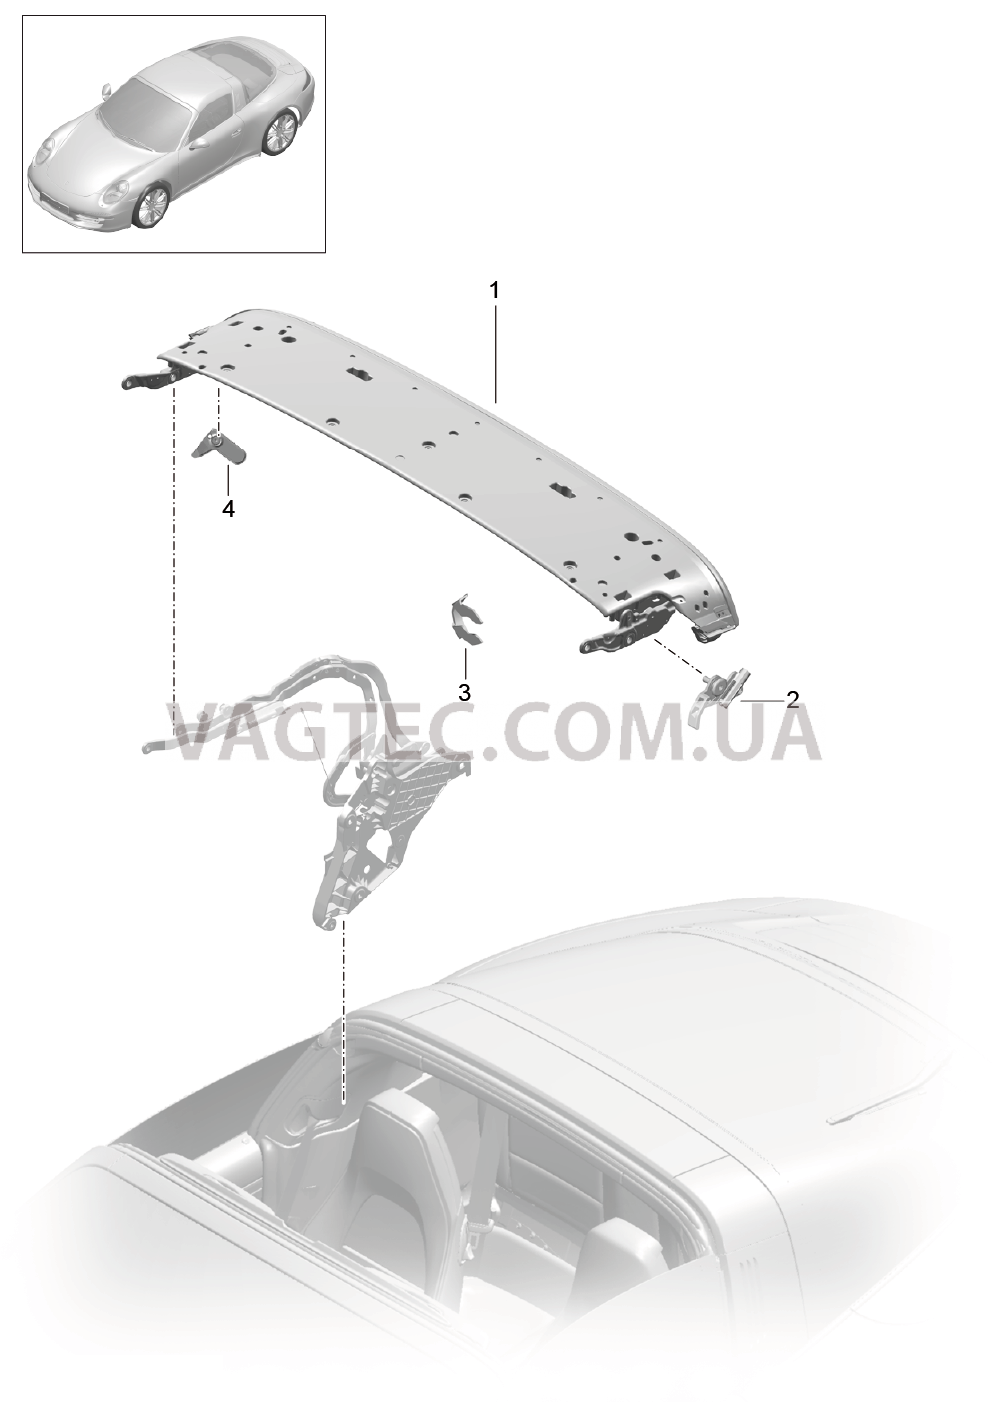 811-022 Каркас складного верха, Отдельные детали, Дуга, Блокировка, боковой
						
						TARGA для PORSCHE 911.Carrera 2012-2016